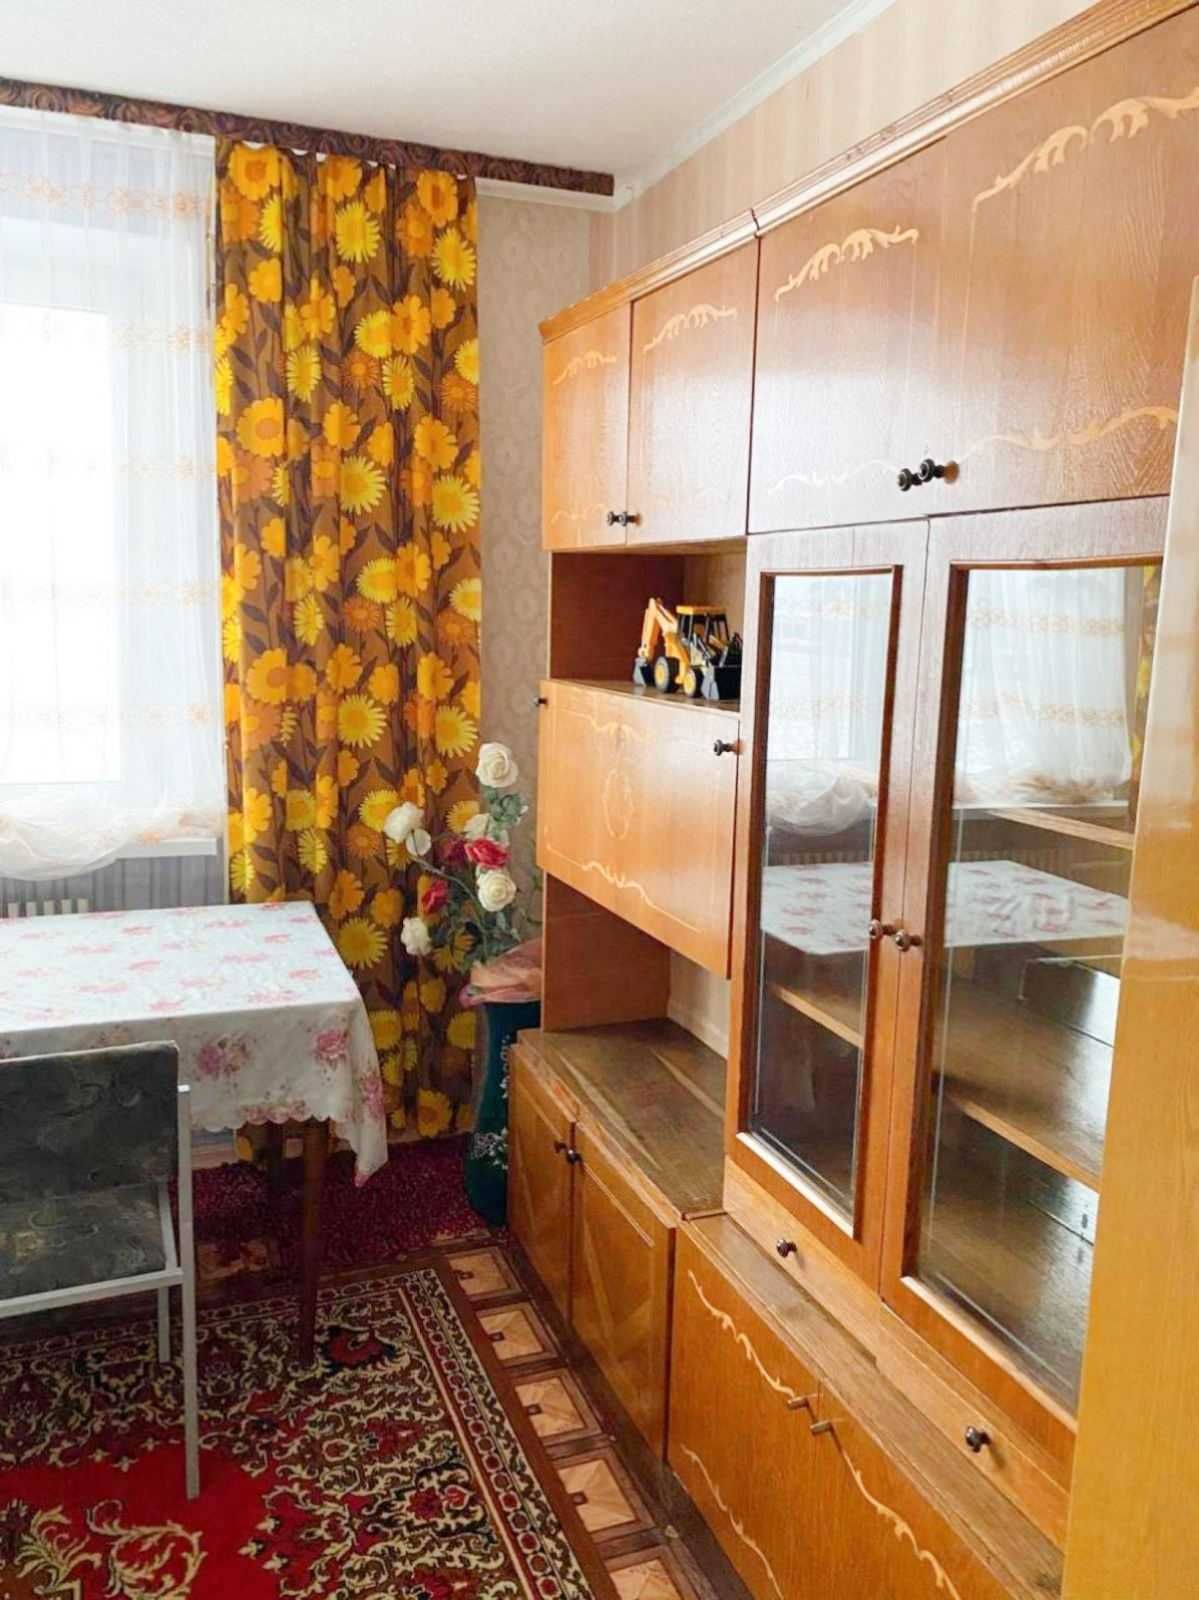 Аренда 2 комнат у 3-х комнатной квартире в п. Жуковского